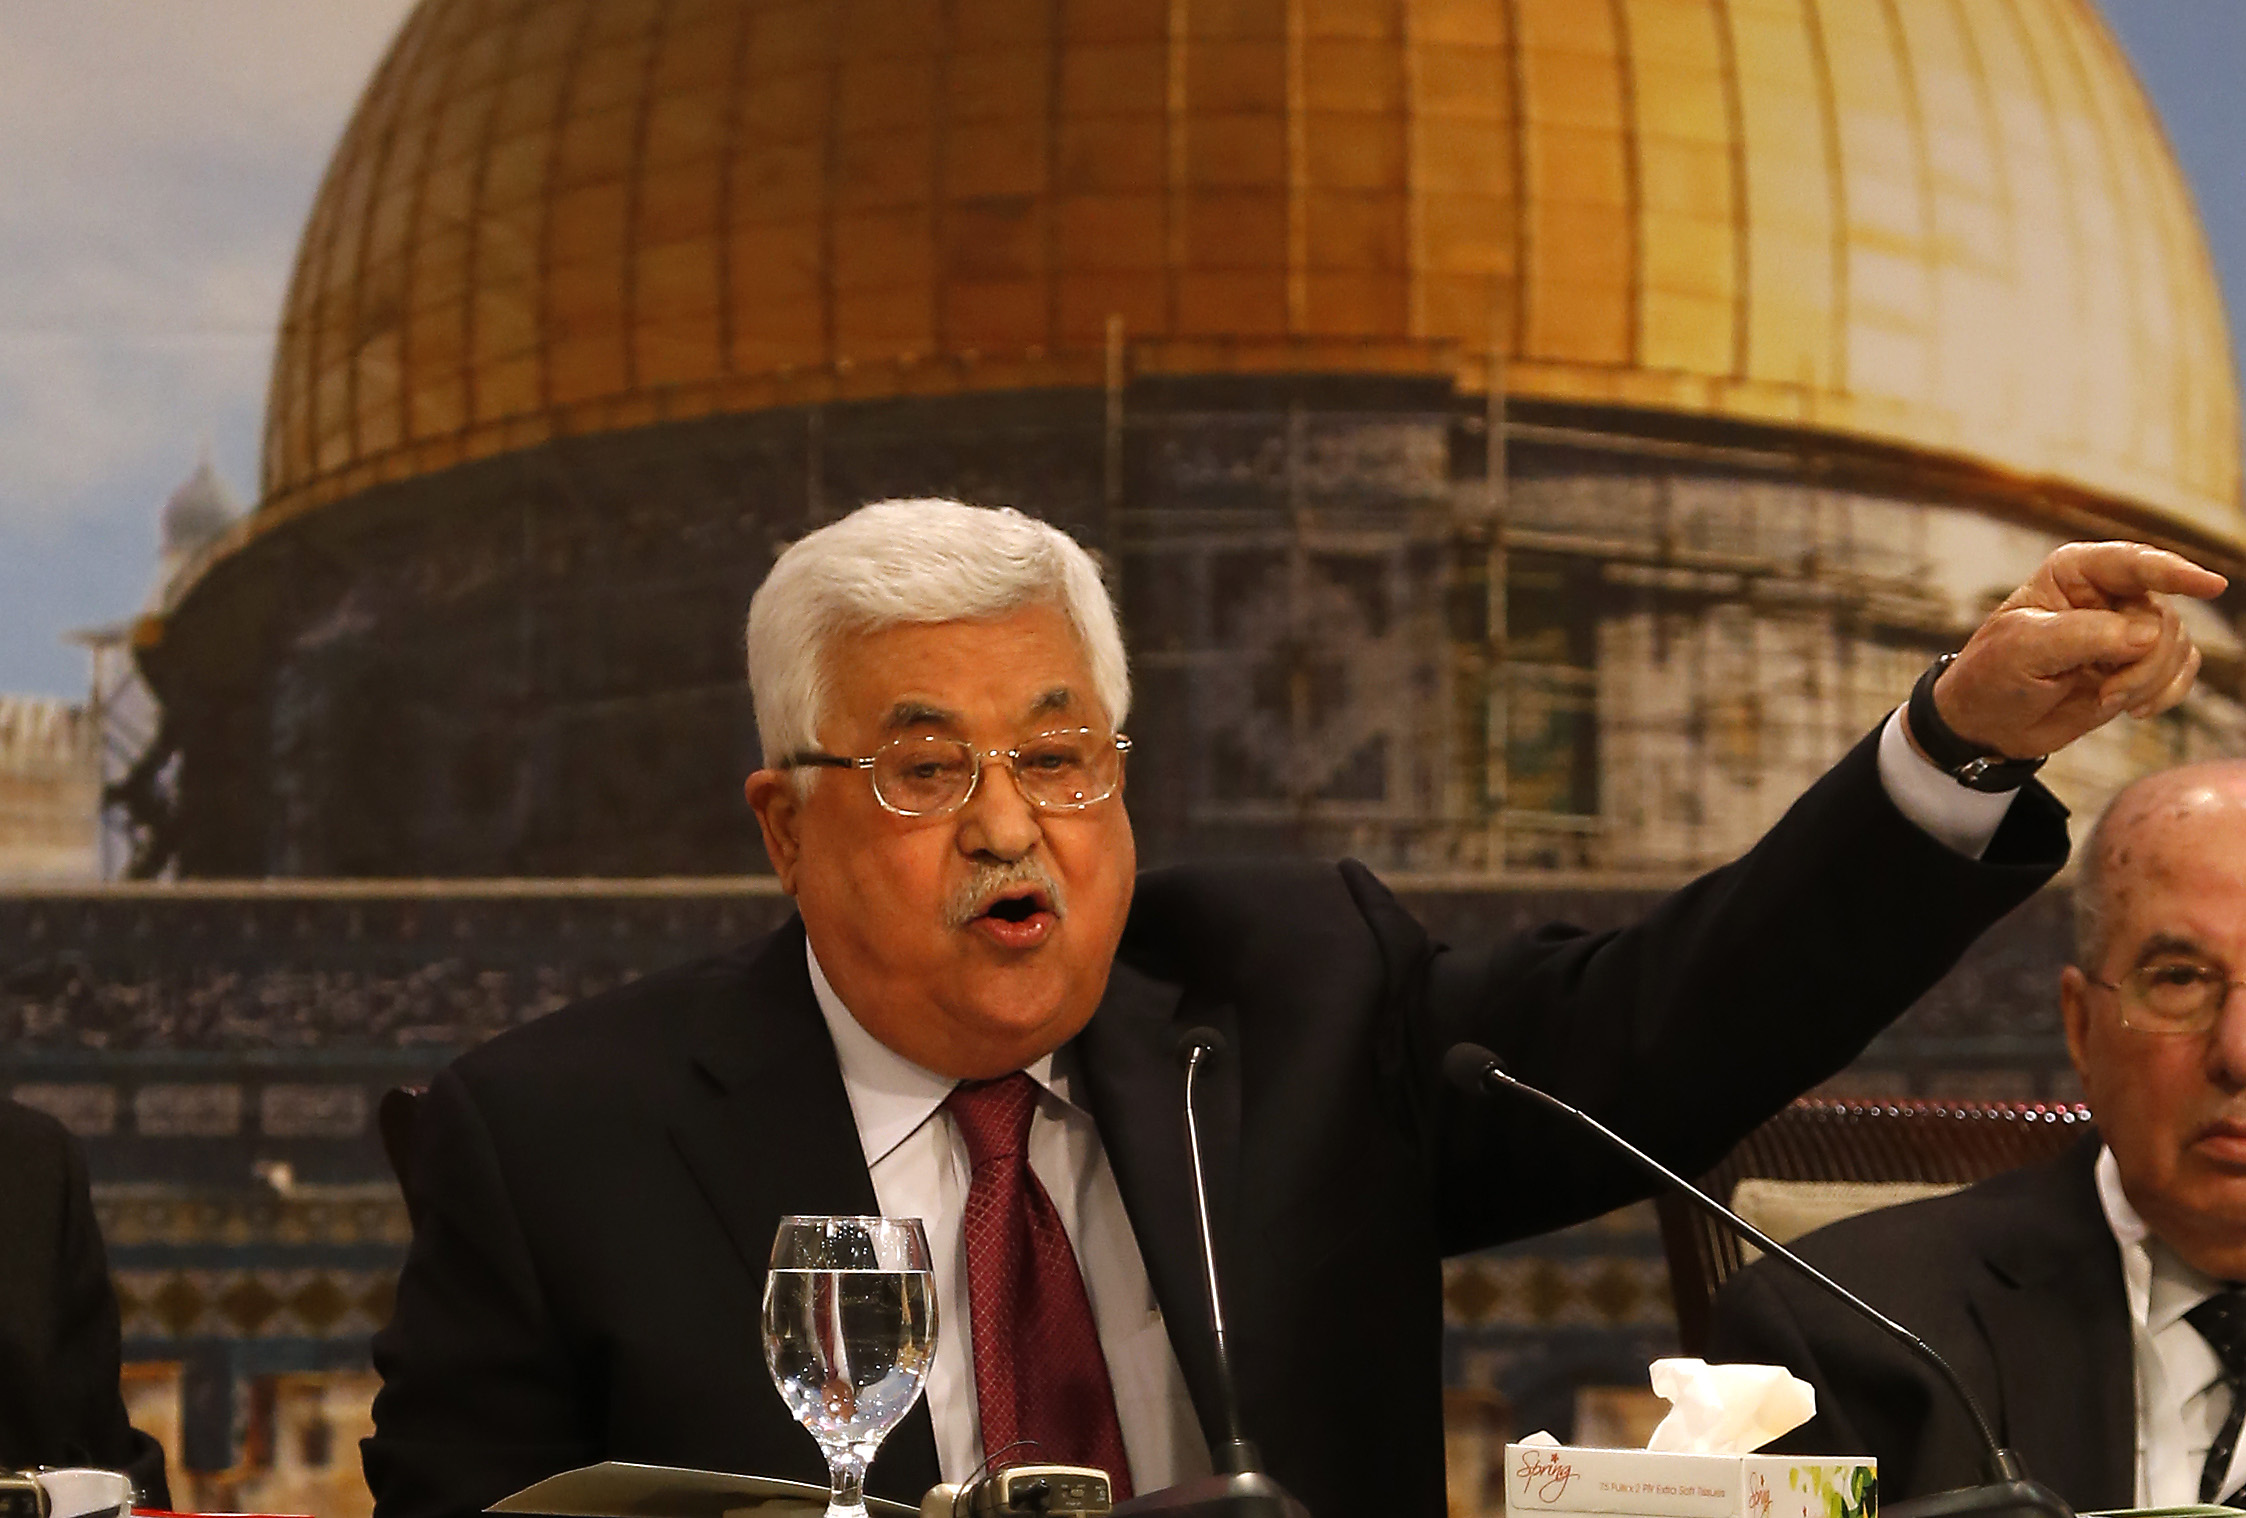 محمود عباس أبو مازن الرئيس الفلسطينى